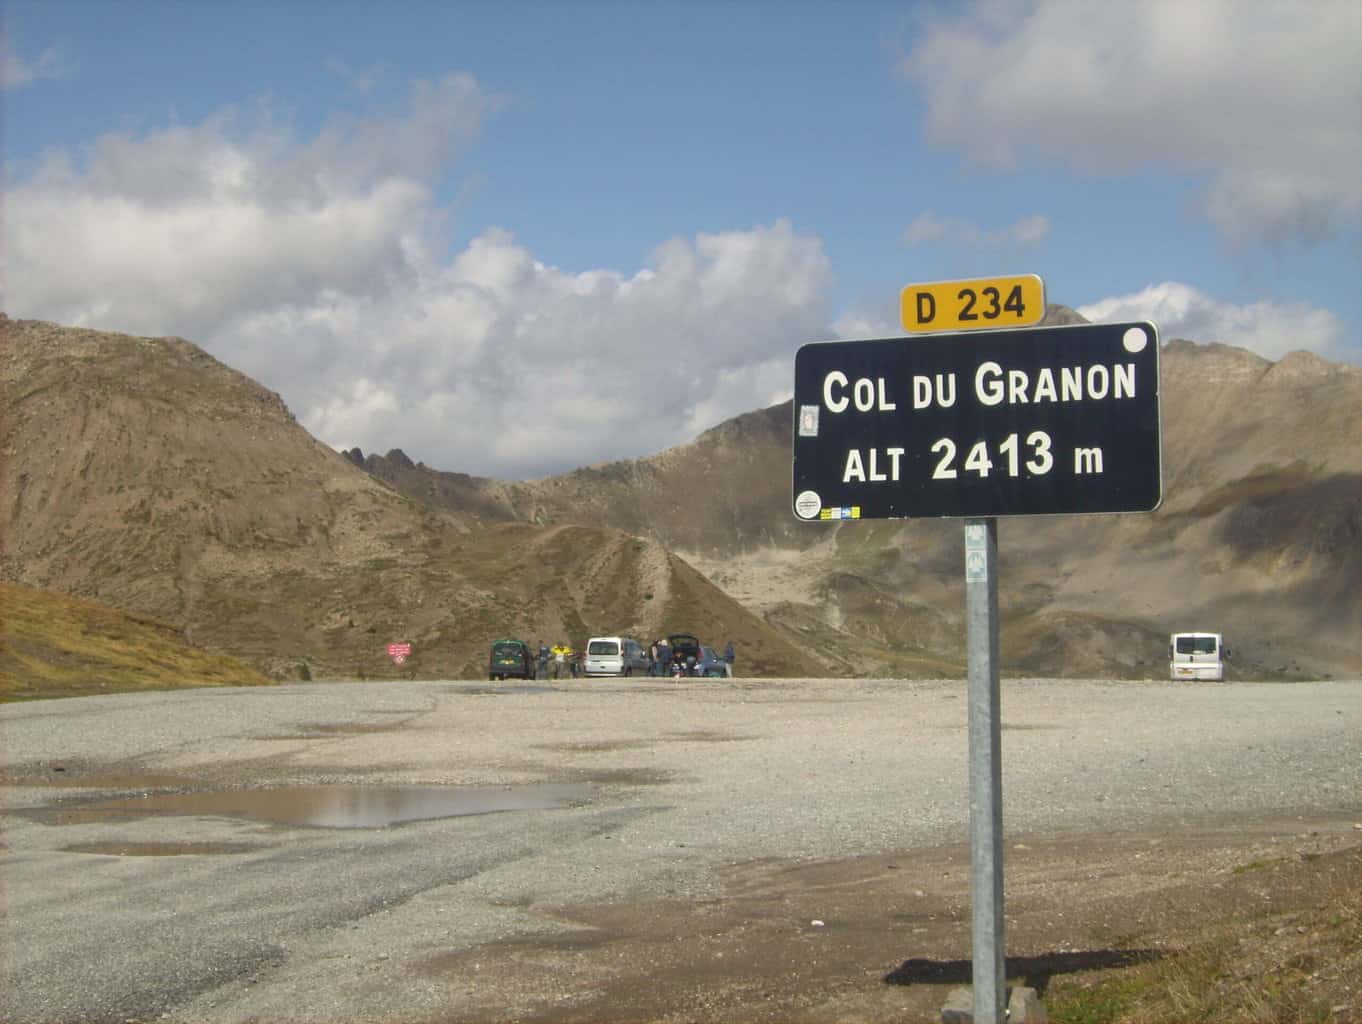 Col du Granon in France